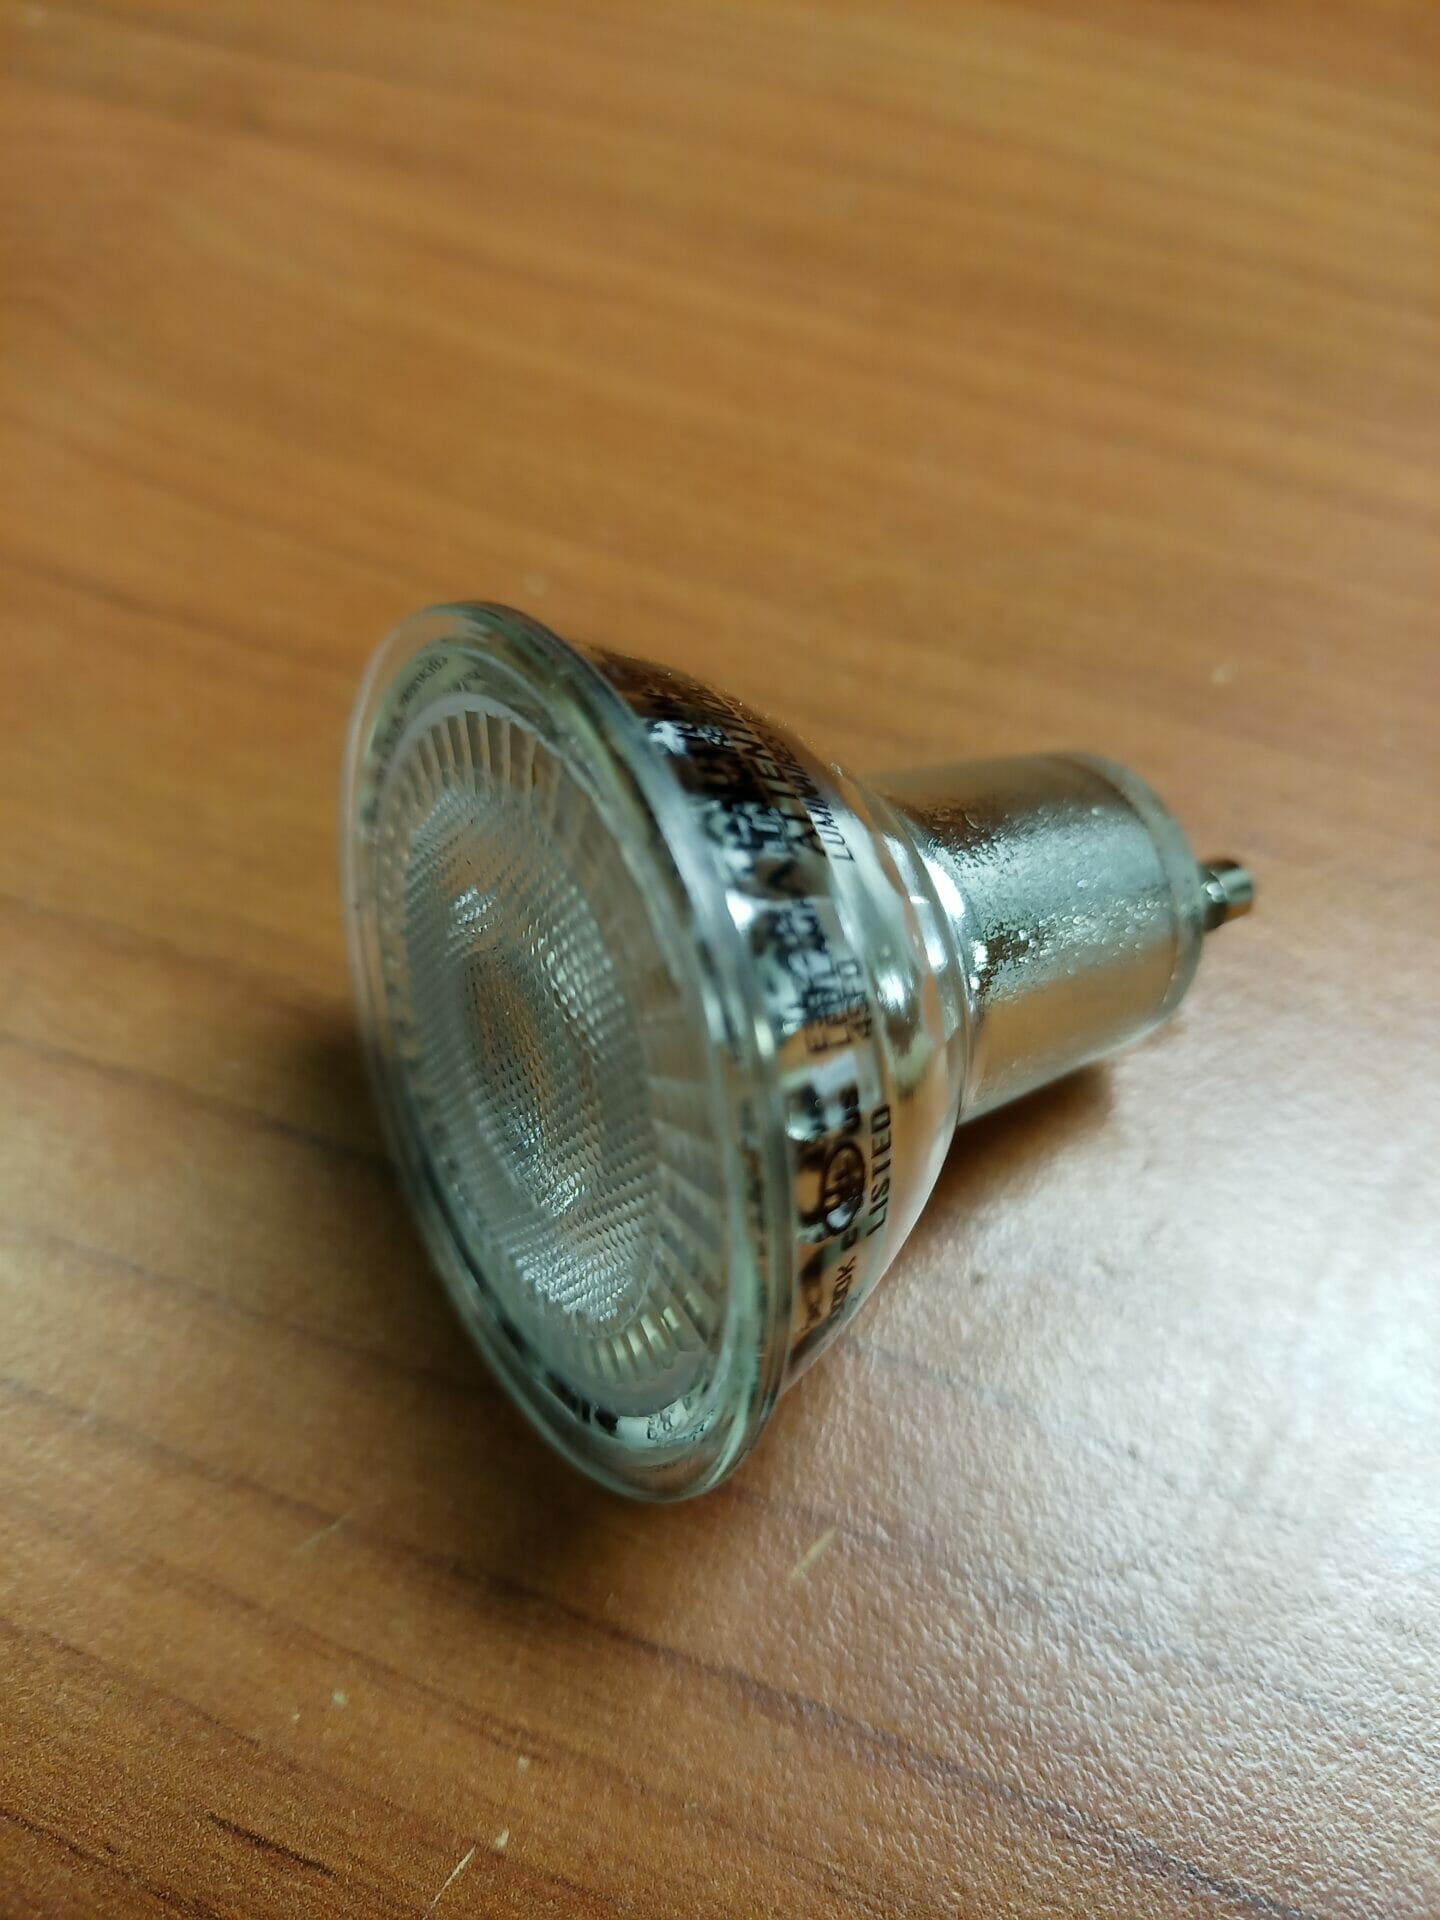 Sylvania LED Accent GU10 Flood LED Light Bulb for Vent Hood – eBuilderDirect